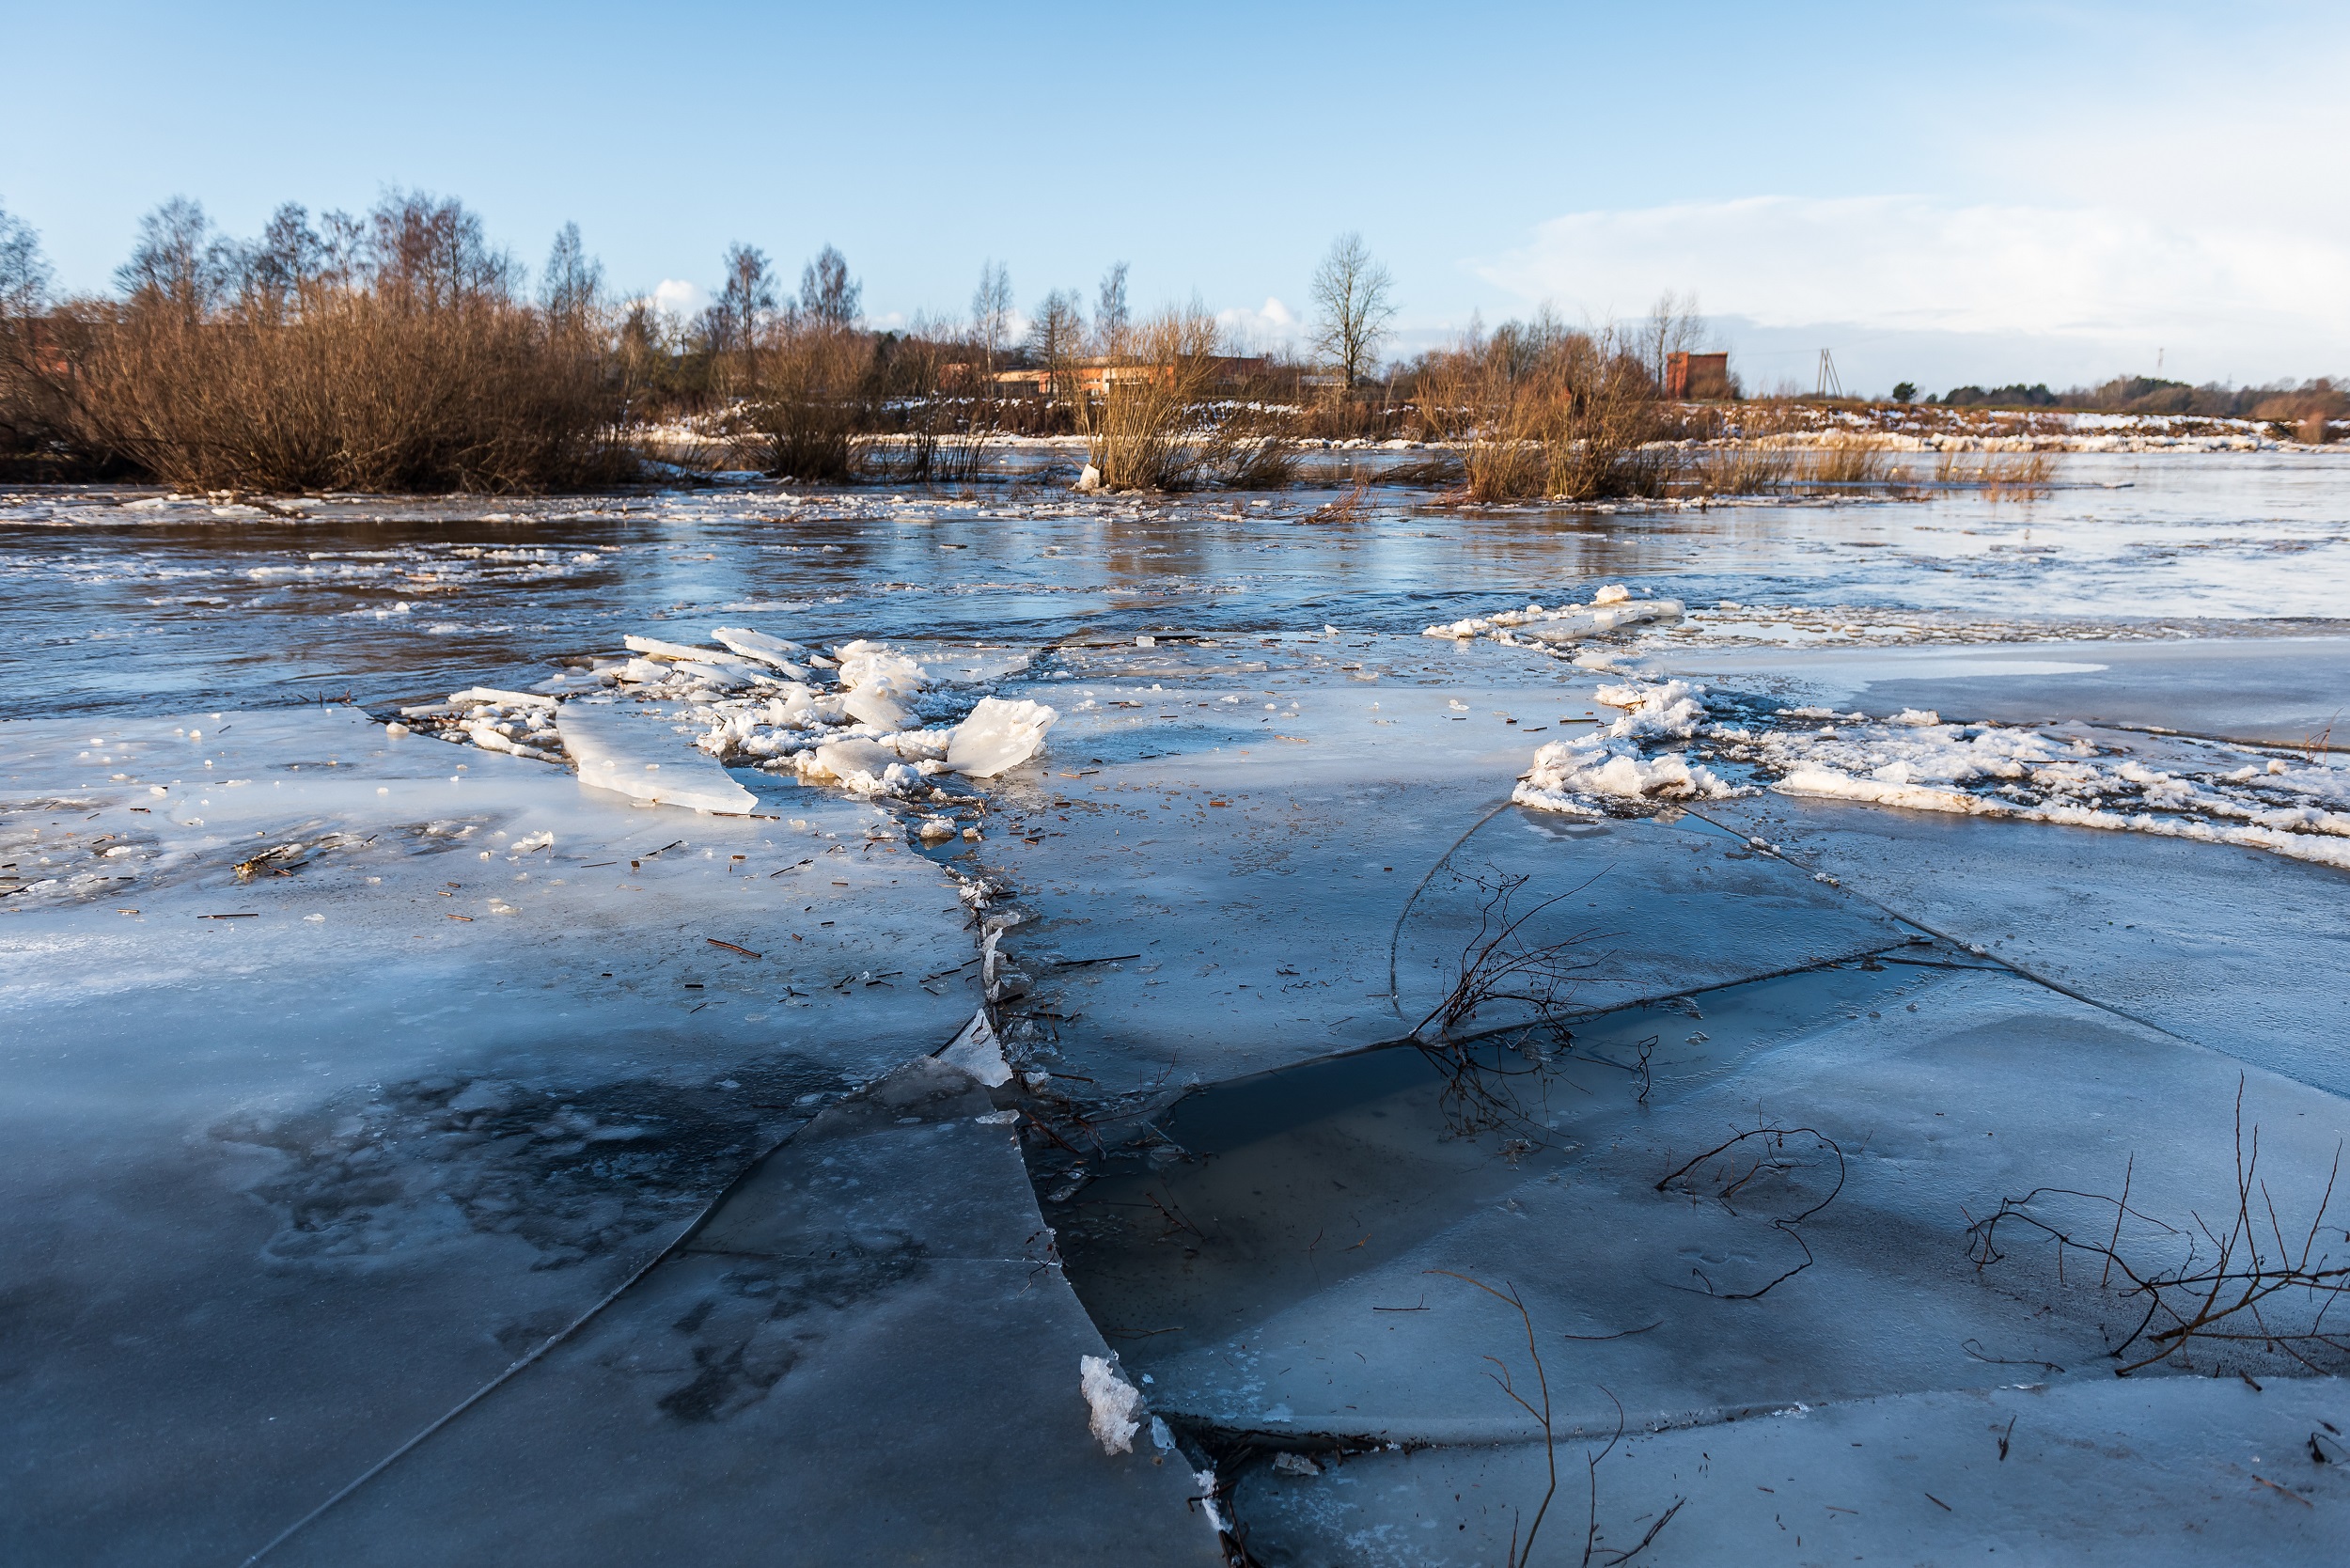 Les zones faiblement inondées risquent de geler avec l'arrivée d'un froid polaire. © Bargais, Adobe Stock